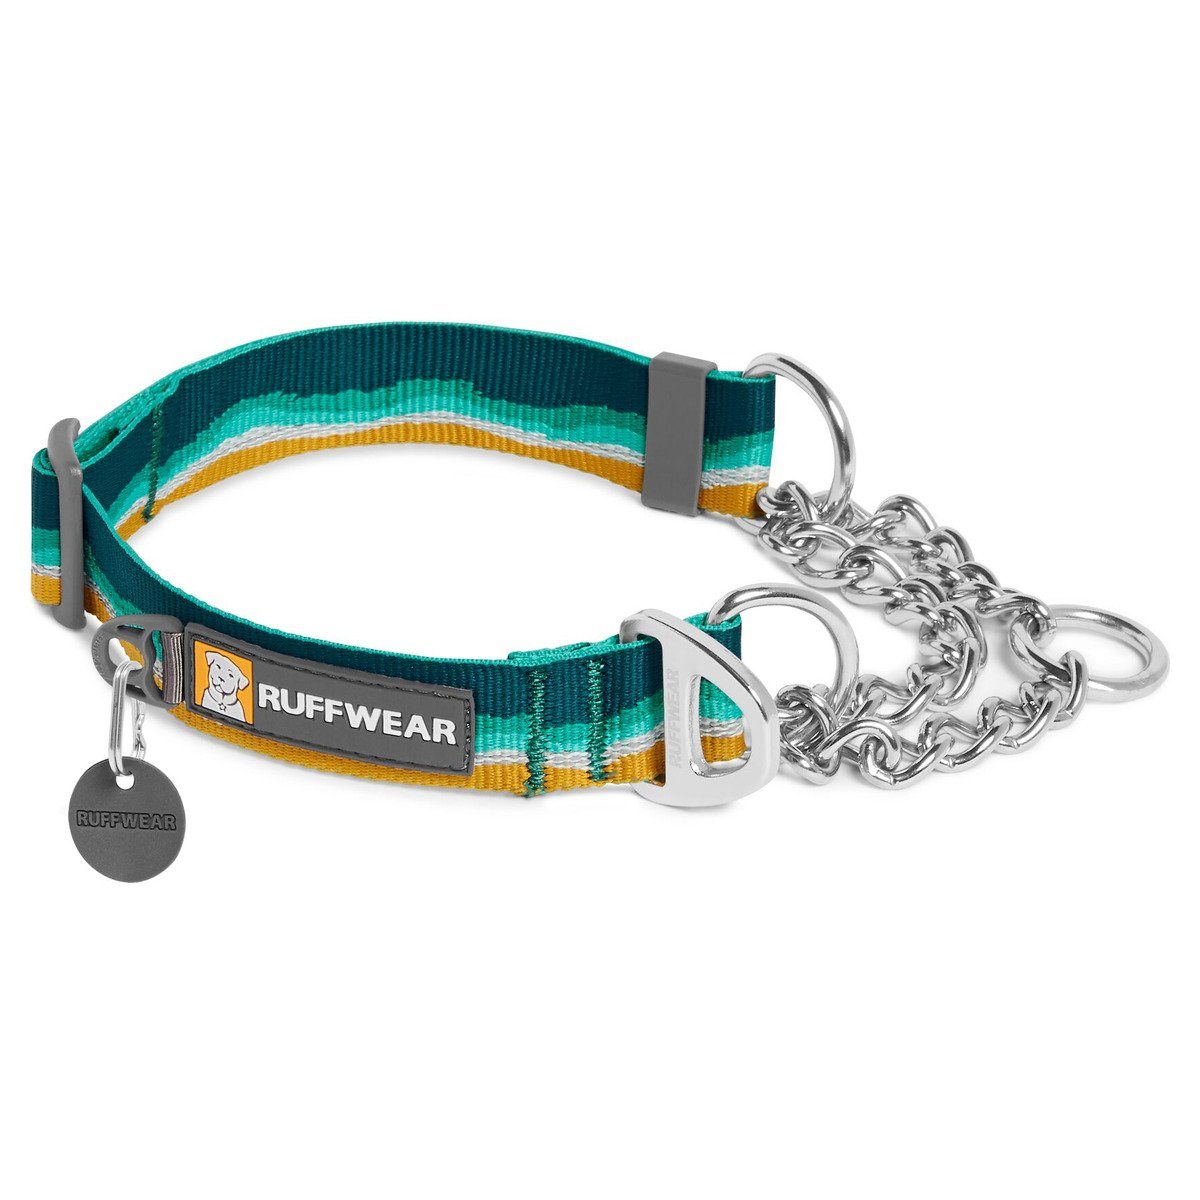 Ruffwear Hunde-Halsband Hundehalsband Chain Reaction Collar Seafoam